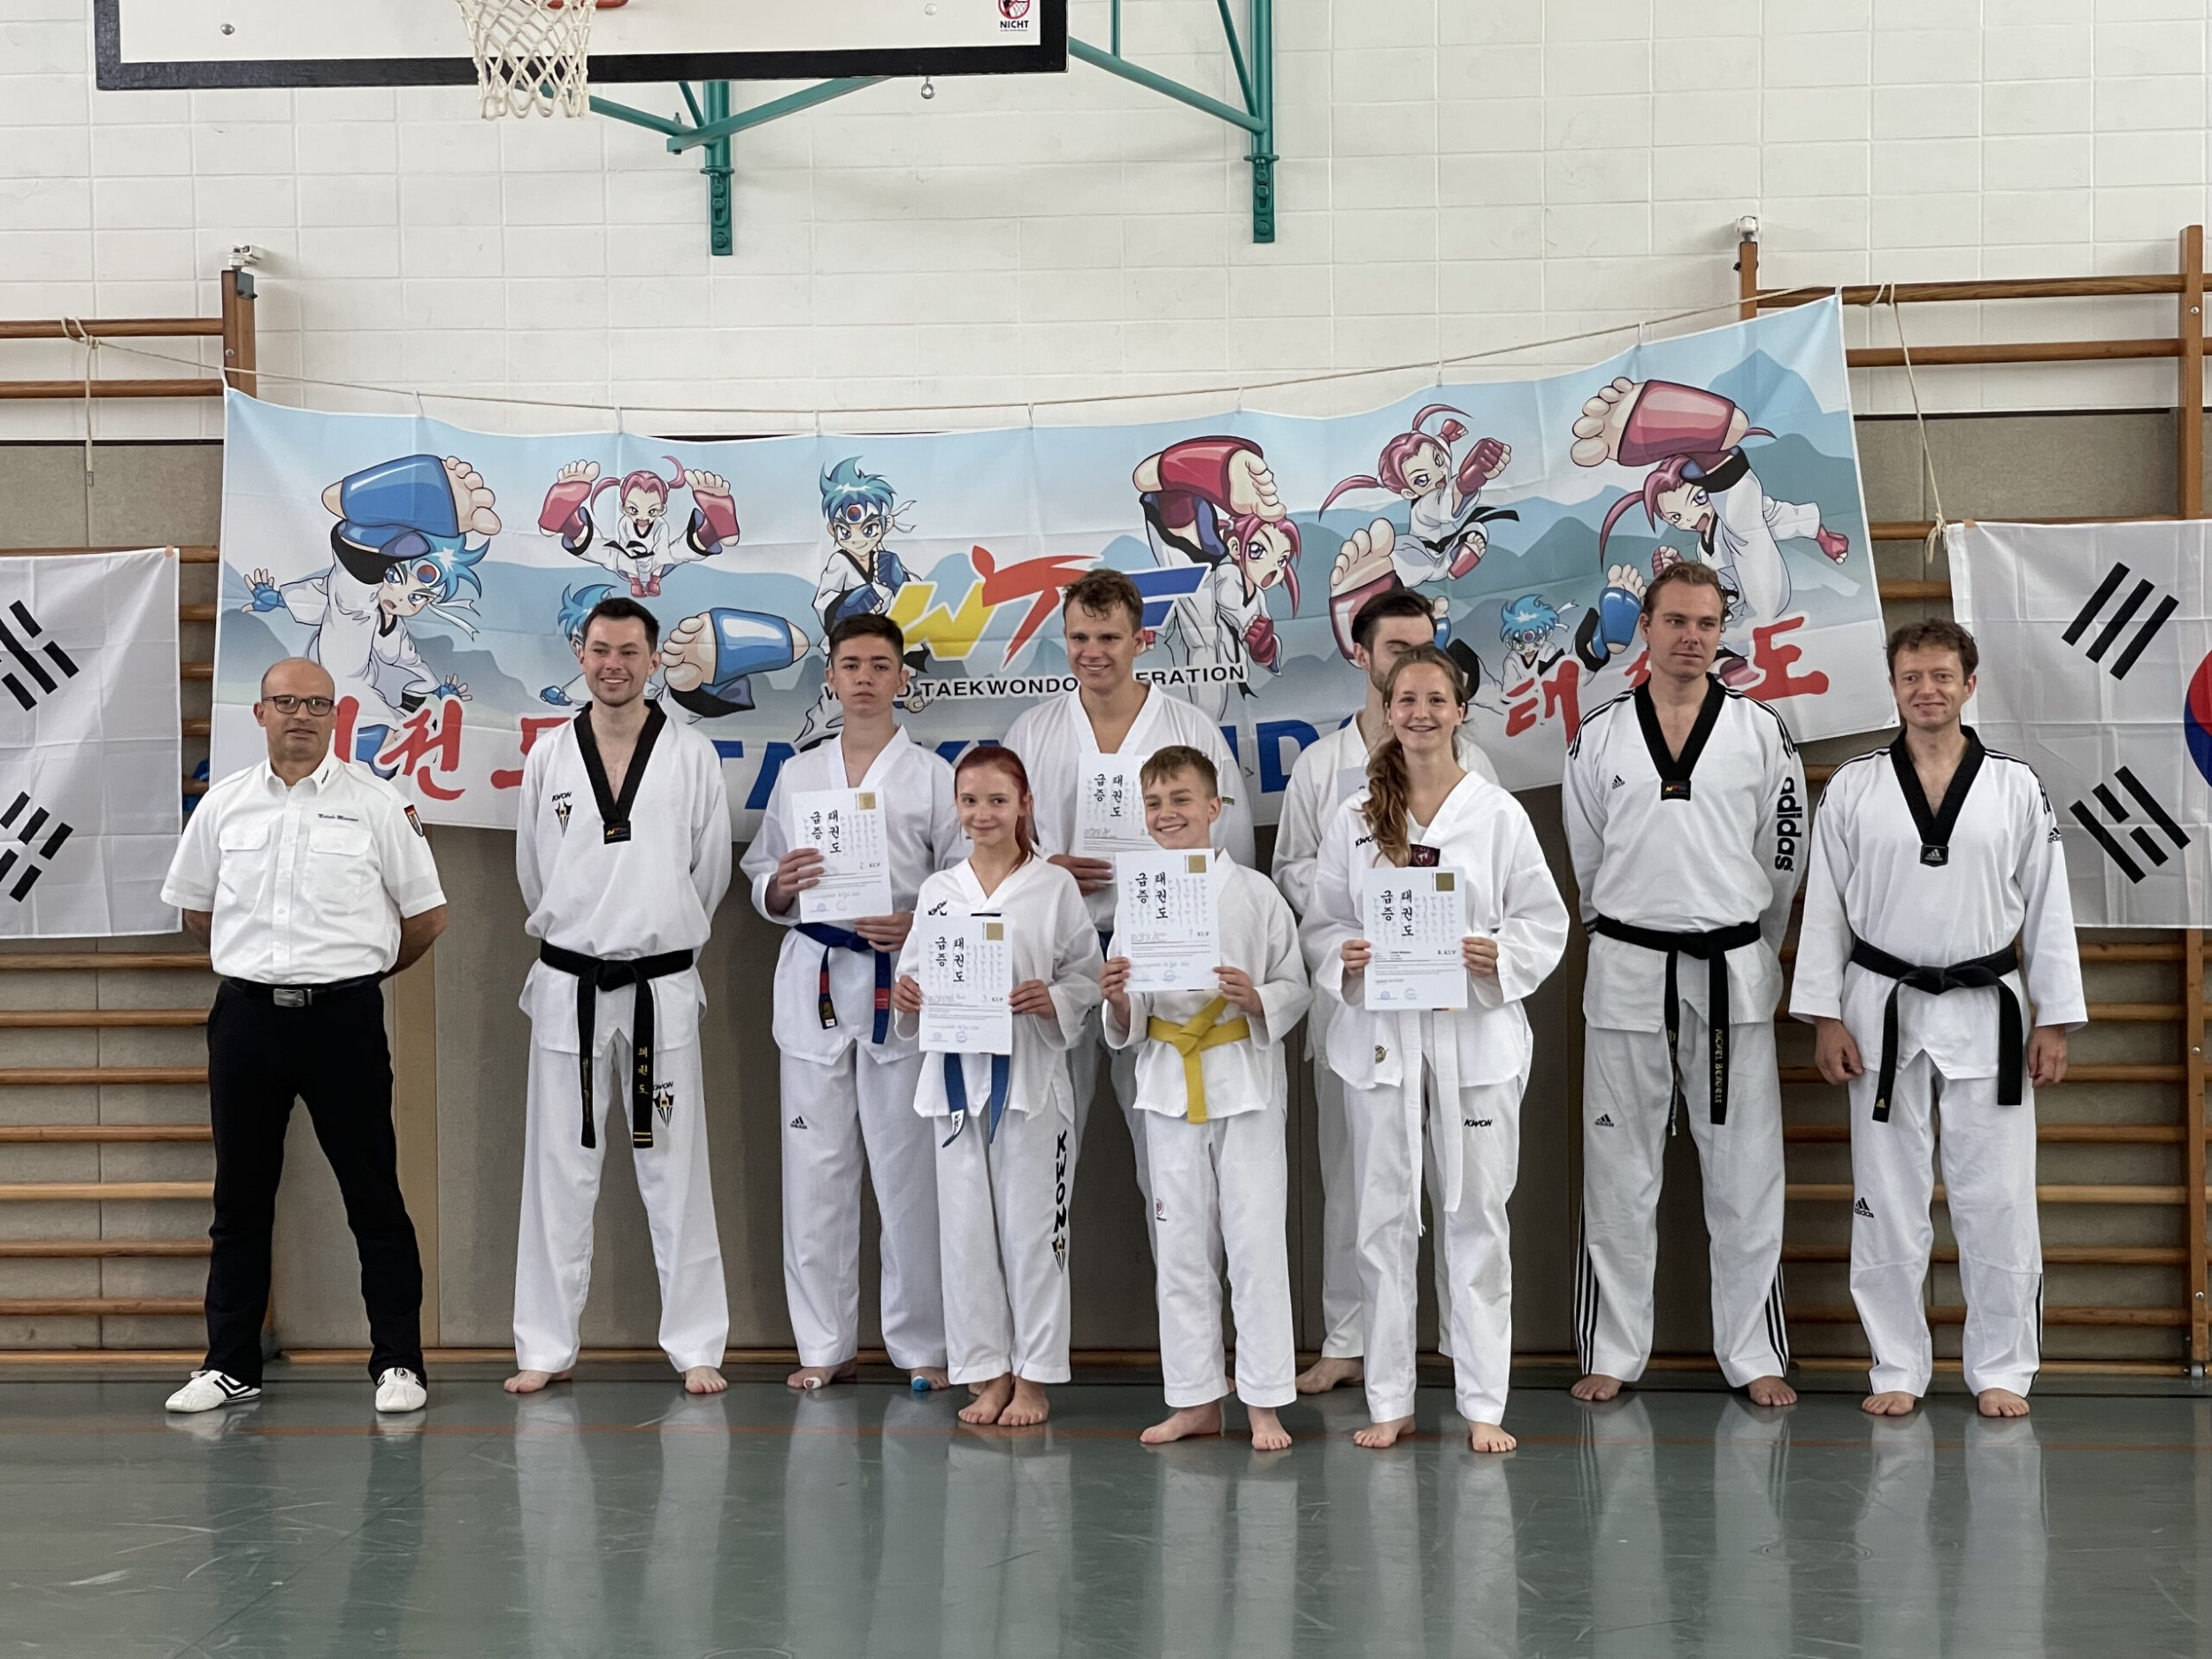 Erste Taekwondo Kupprüfung nach 1,5 Jahren Corona